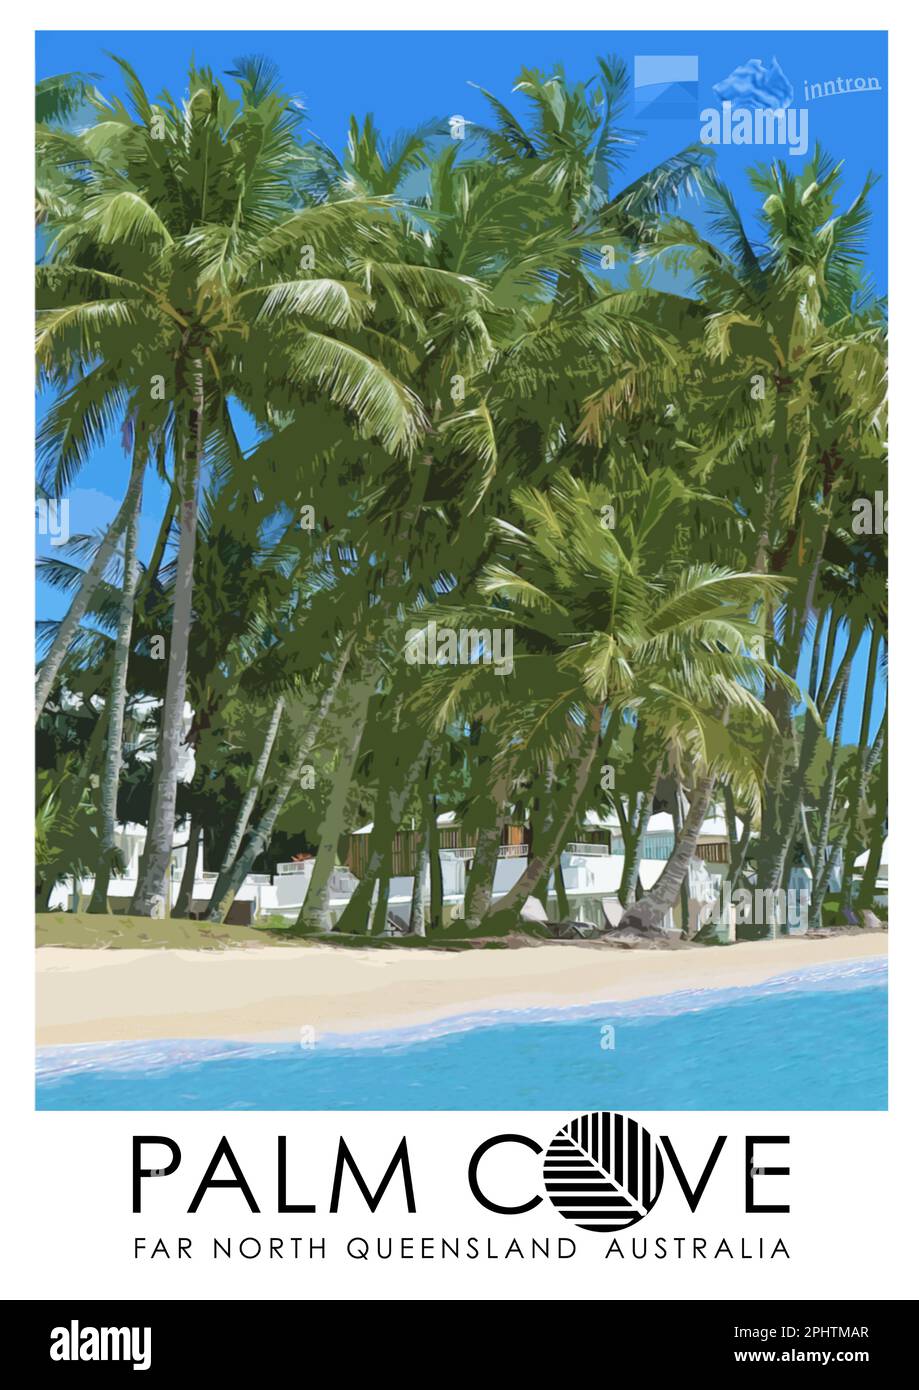 Illustrazione in formato poster basata su una fotografia personale della splendida posizione sulla spiaggia di Palm Cove, al di fuori dell'Alamanda Resort Foto Stock